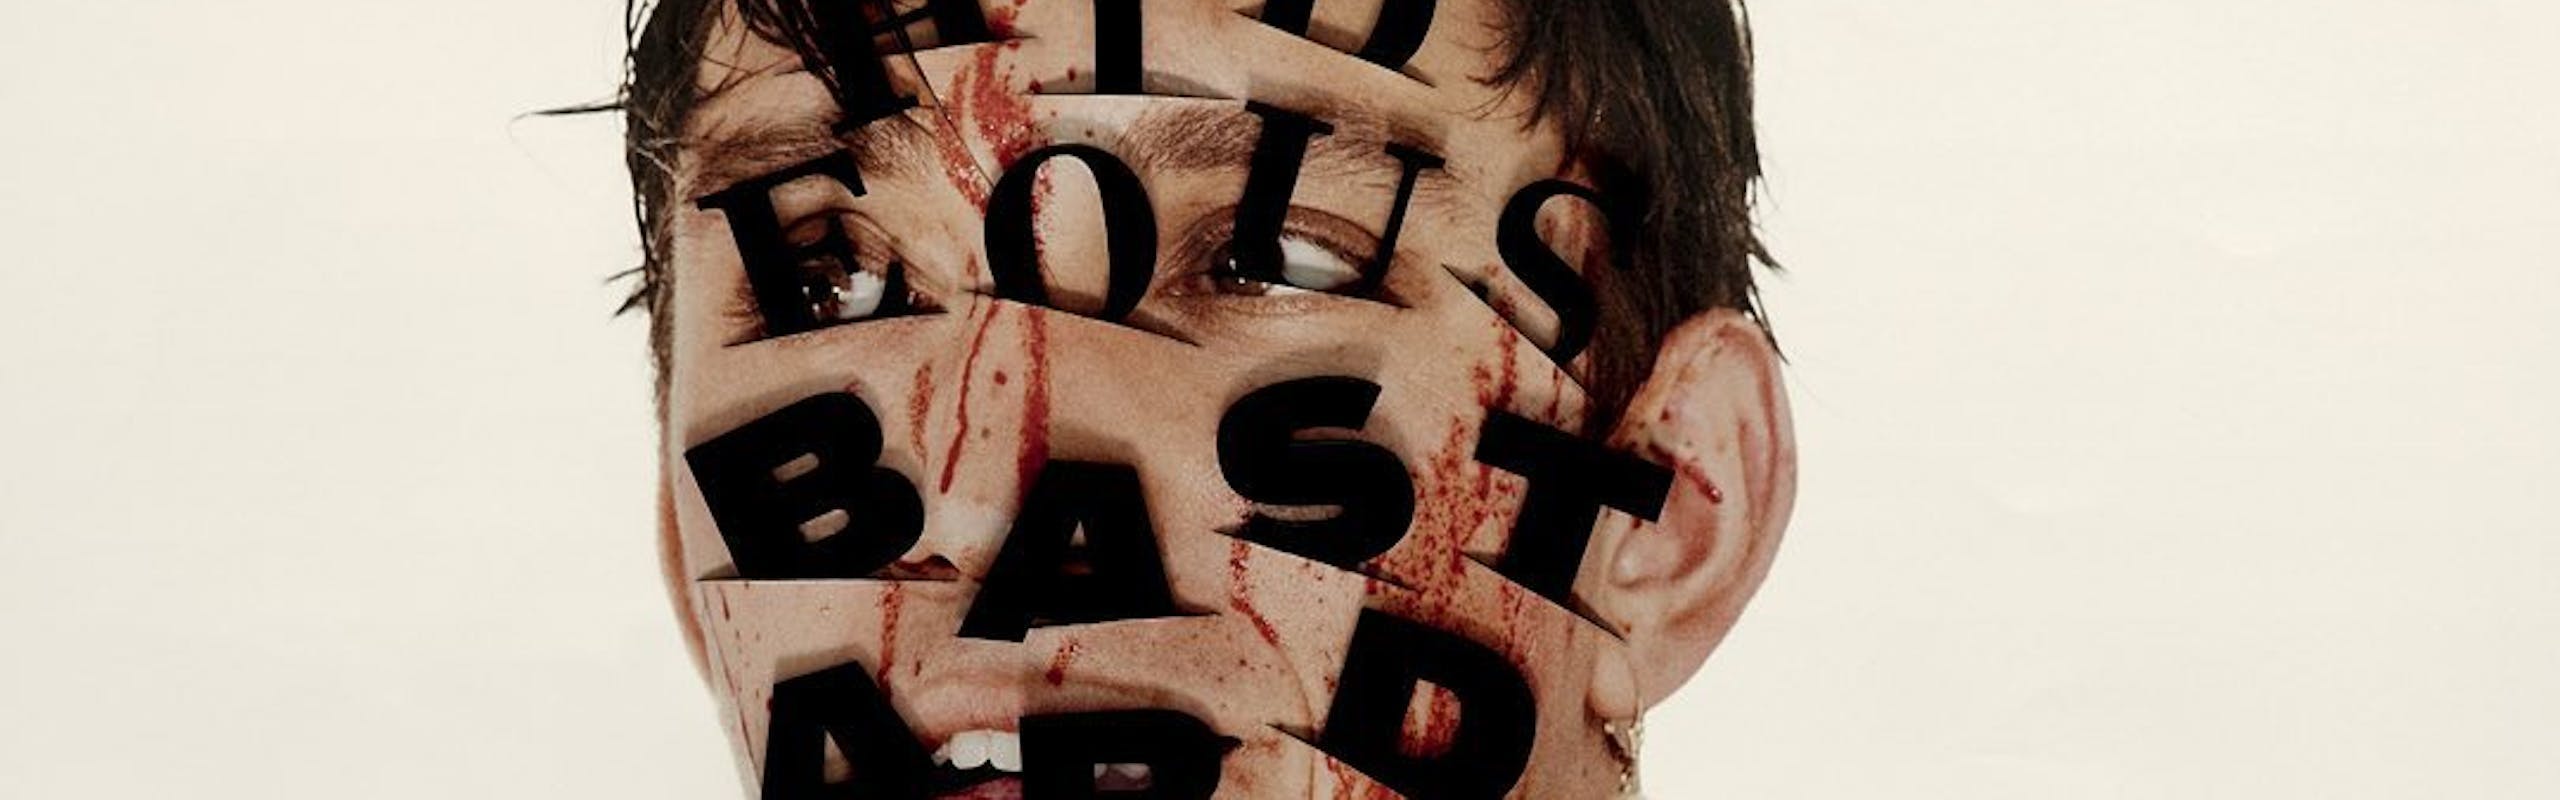 La cover del nuovo album "Hideous Bastard" di Oliver Sim